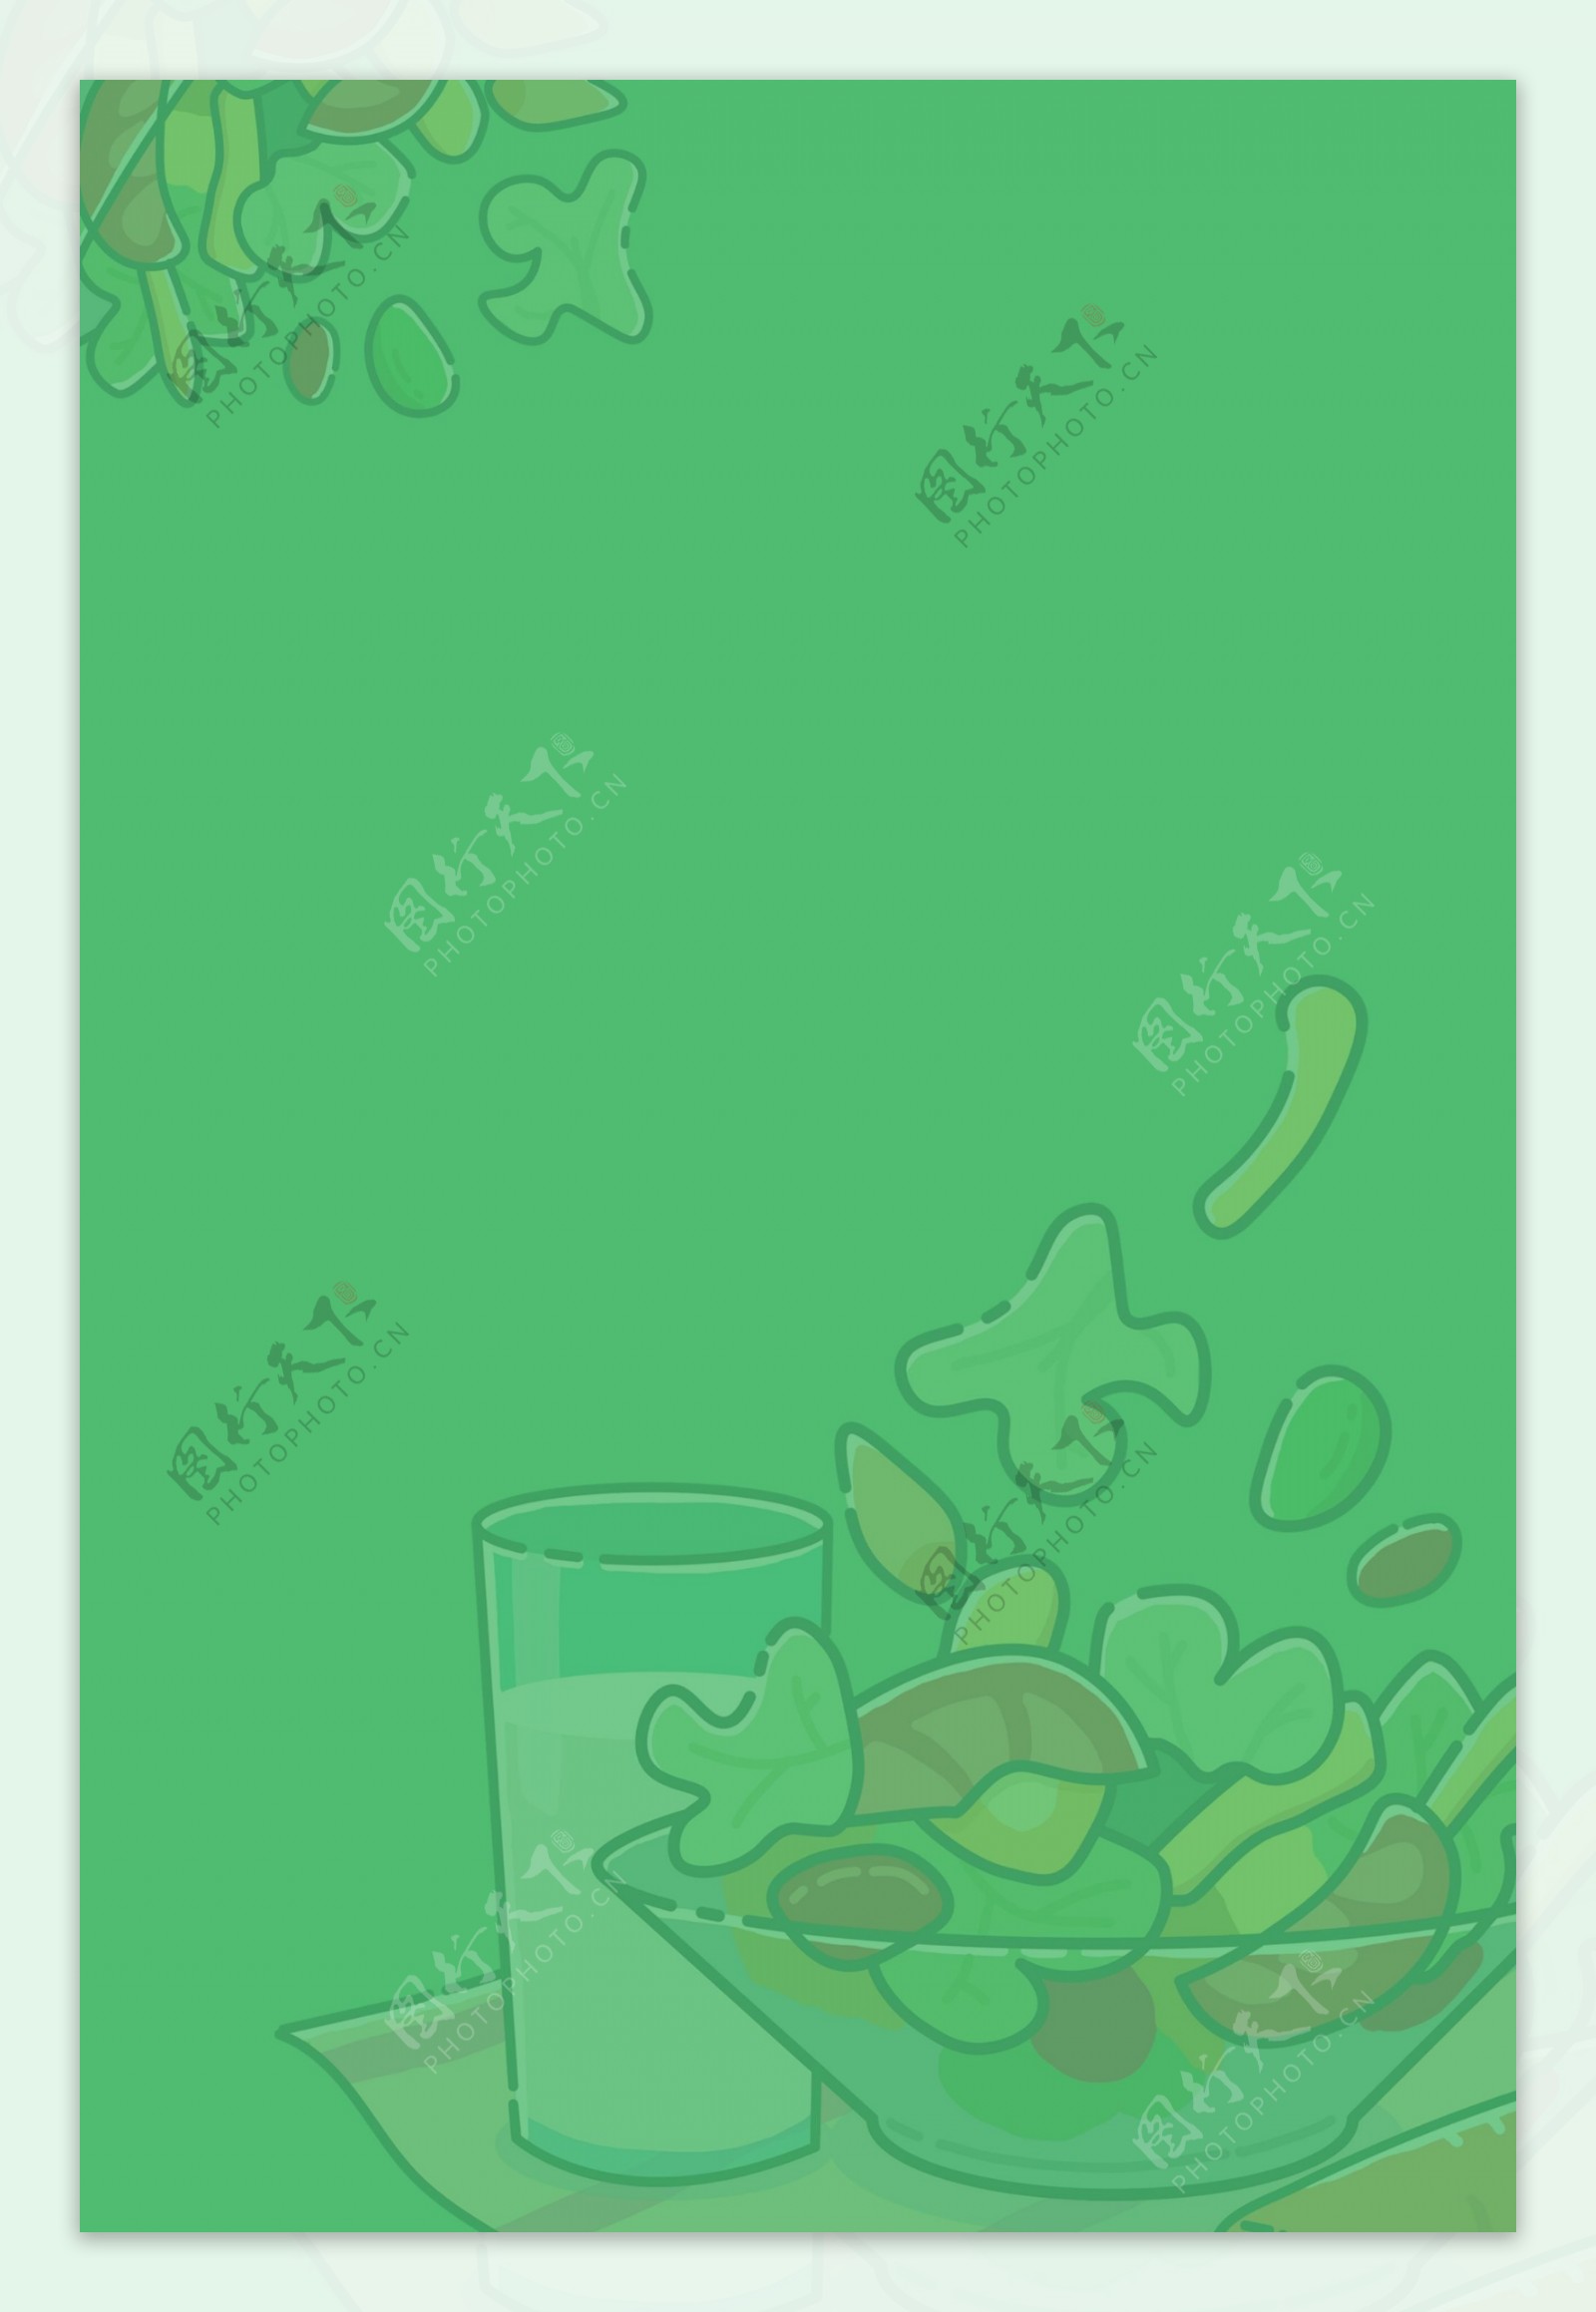 水果沙拉轻食卡通绿色背景